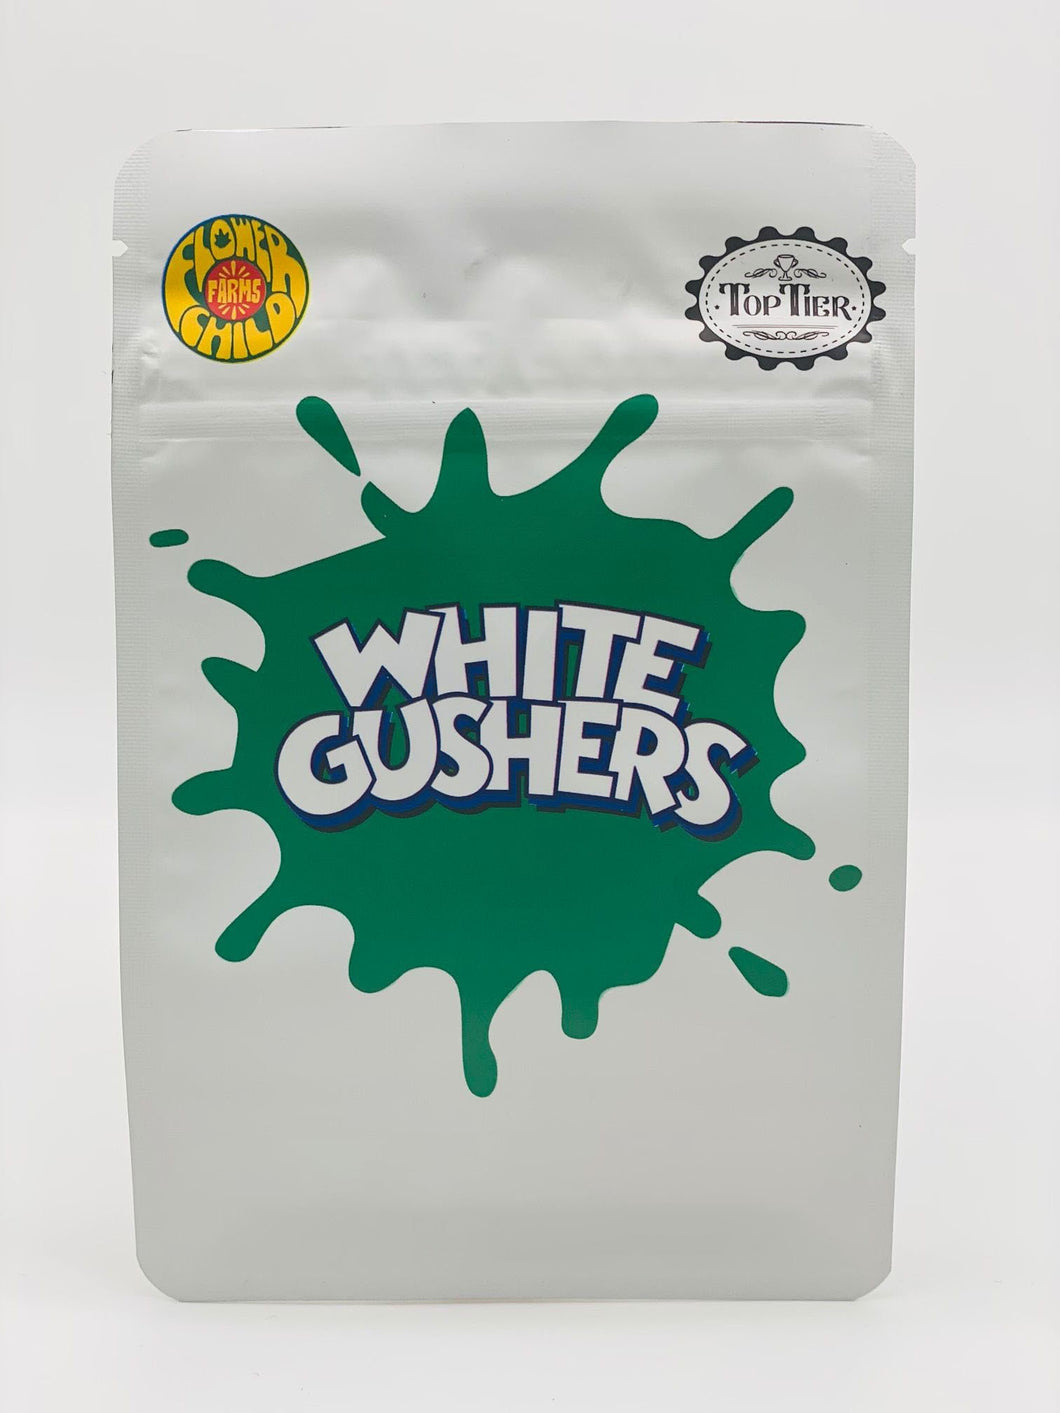 50 White Gushers  3.5 gram empty Mylar bags